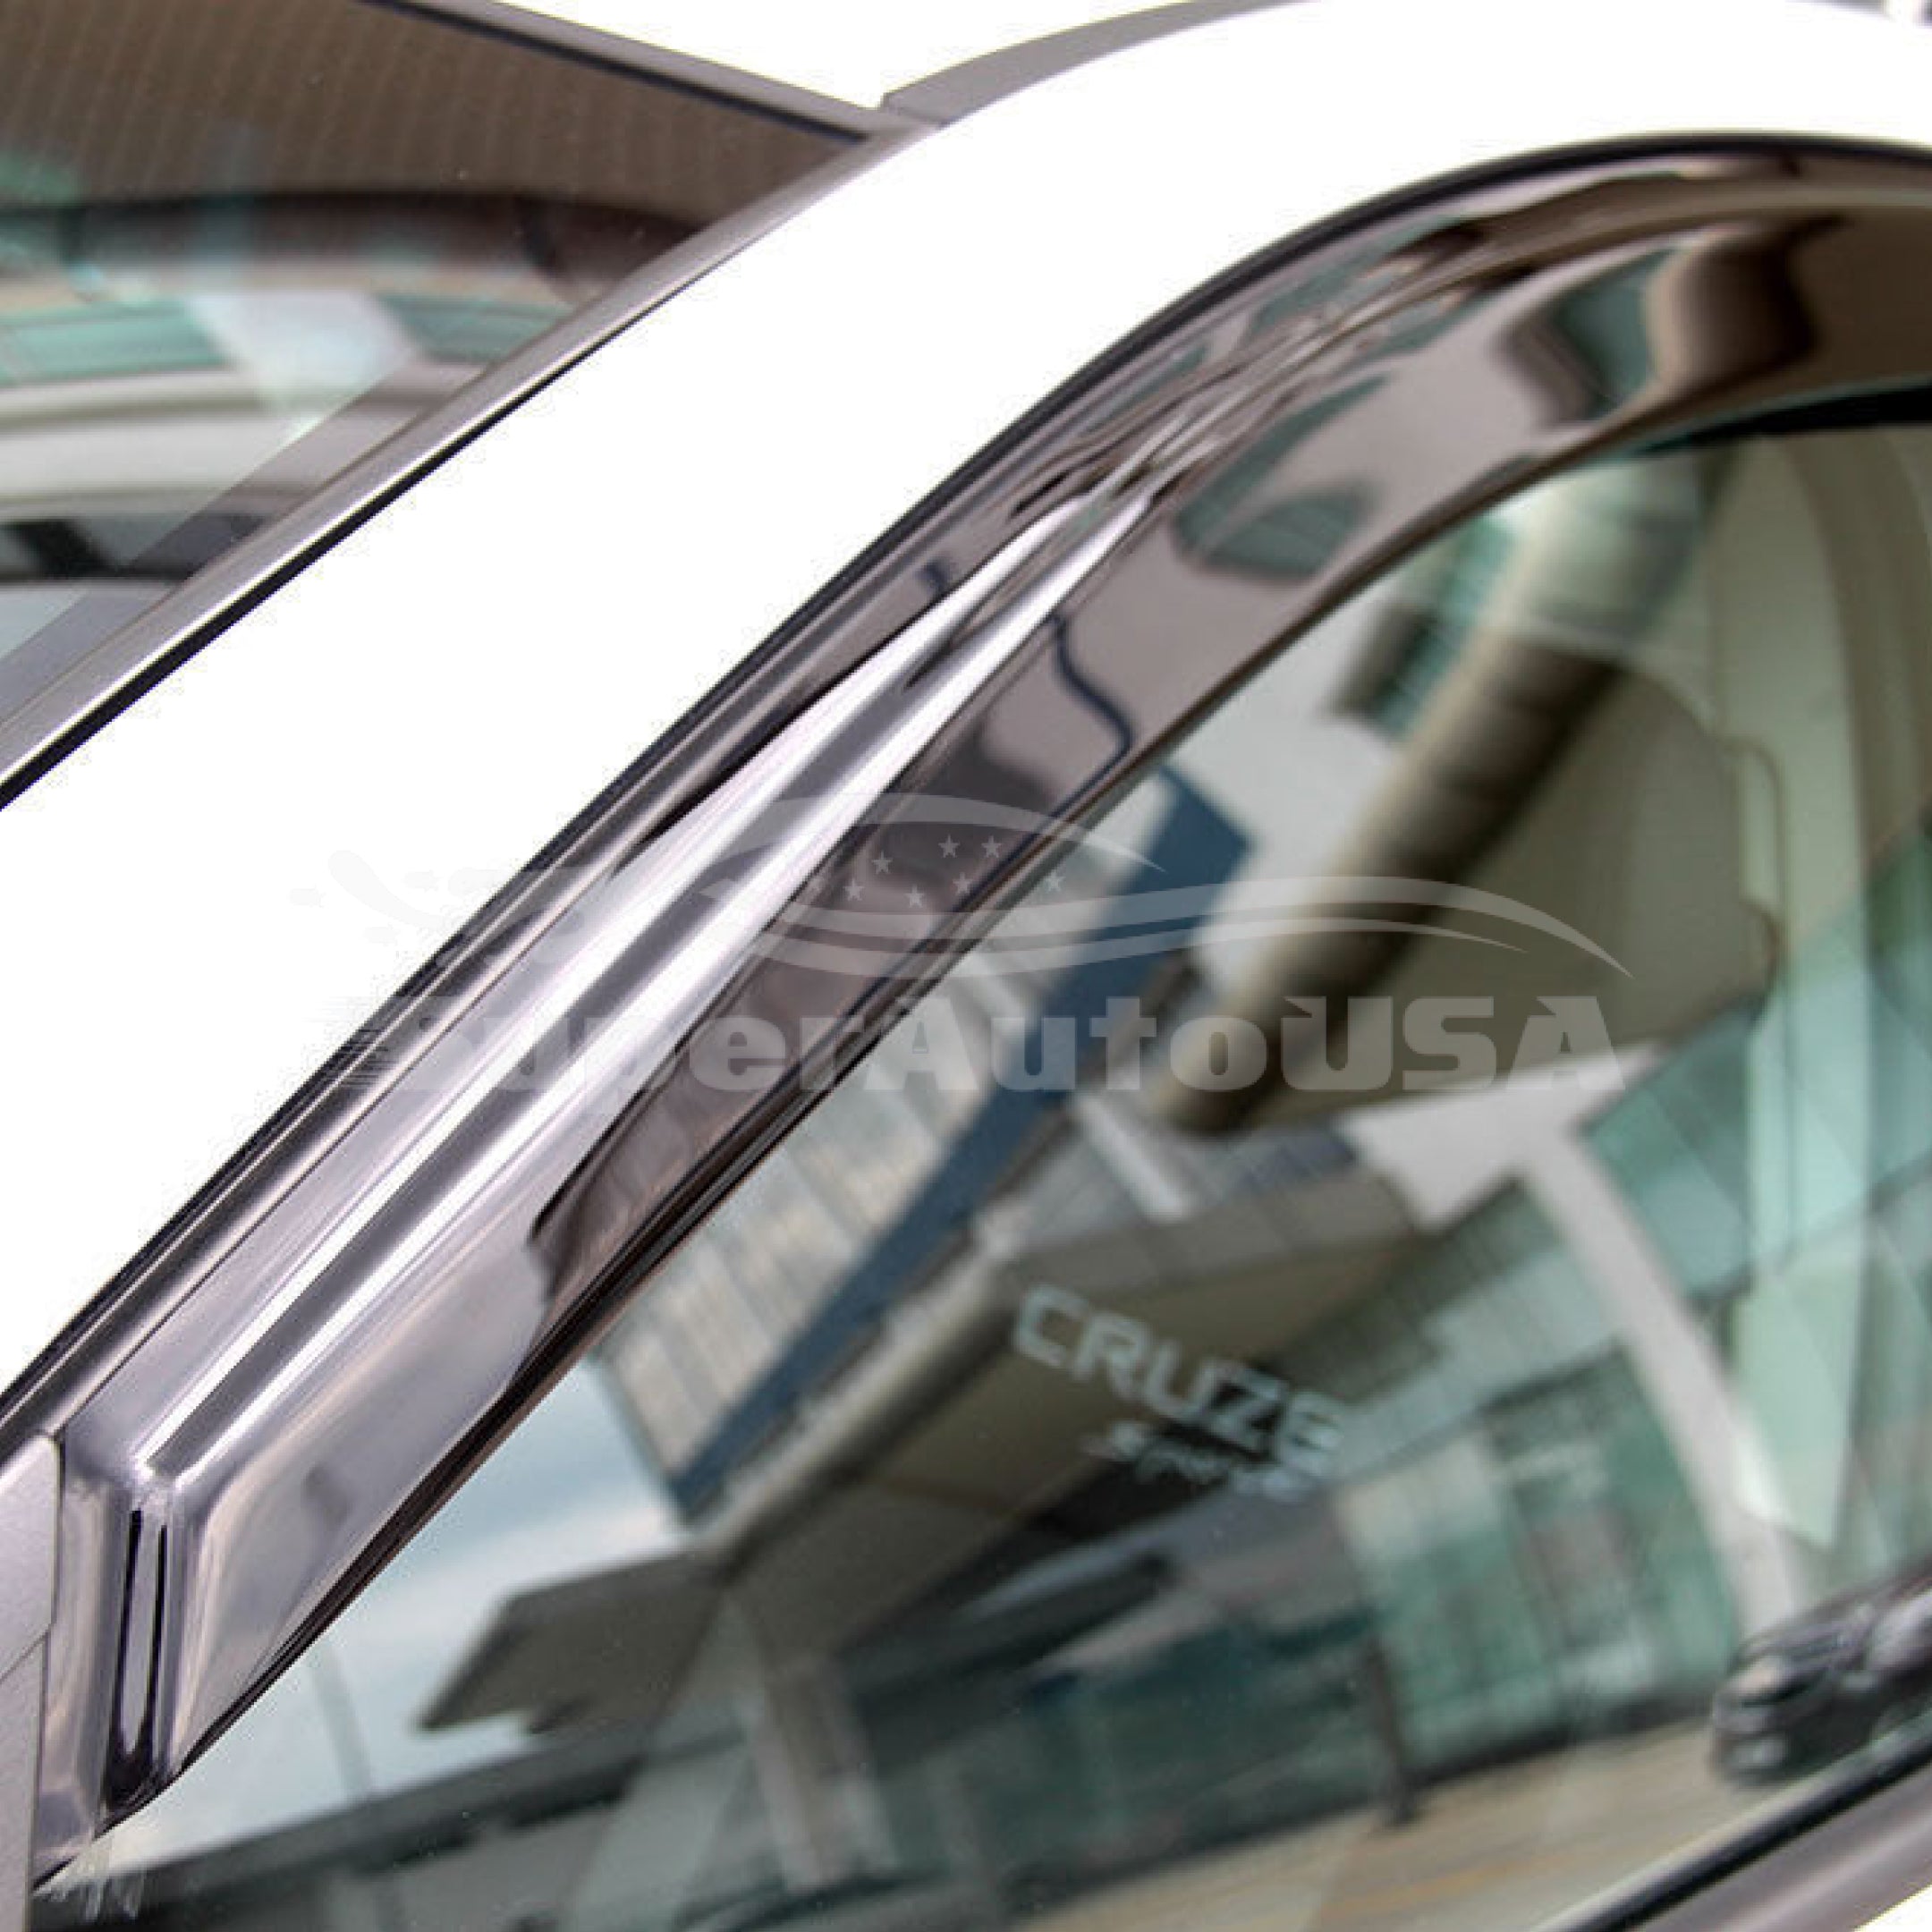 Ajuste 2008-2014 Subaru WRX STI Impreza OE Style Vent Window Viseras Rain Sun Wind Guards Shade Deflectors